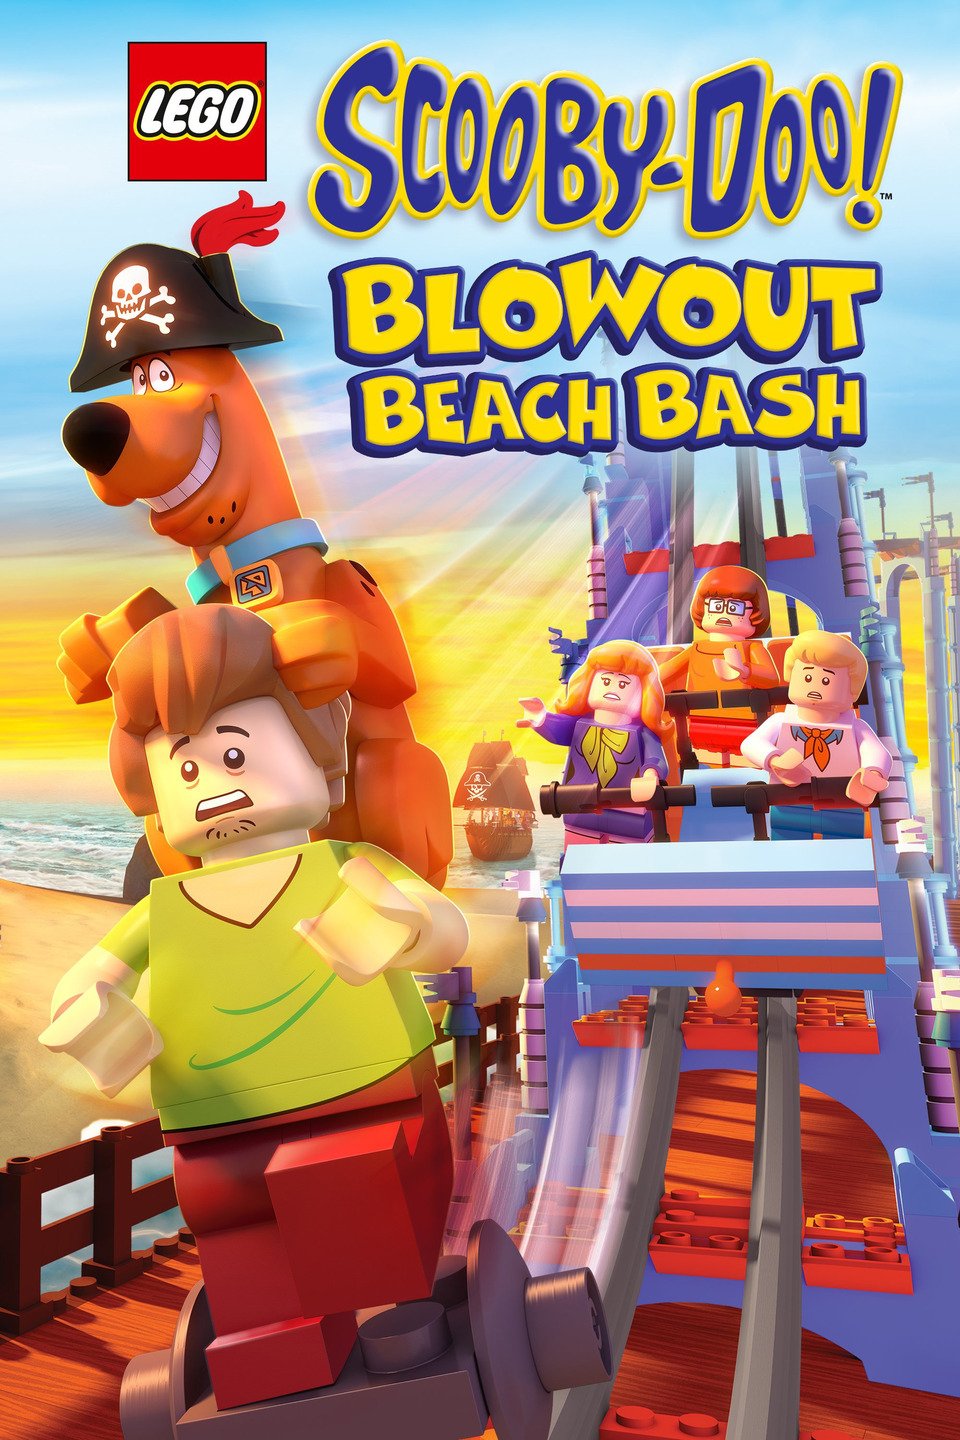 [MINI-HD HQ] Lego Scooby-Doo! Blowout Beach Bash (2017) : เลโก้ สคูบี้ดู! ตะลุยหาดปีศาจโจรสลัด [1080P] [BrRip.DTS.x264] [พากย์ไทย 5.1 + เสียงอังกฤษ DTS] [บรรยายไทย + อังกฤษ] [ONE2UP]